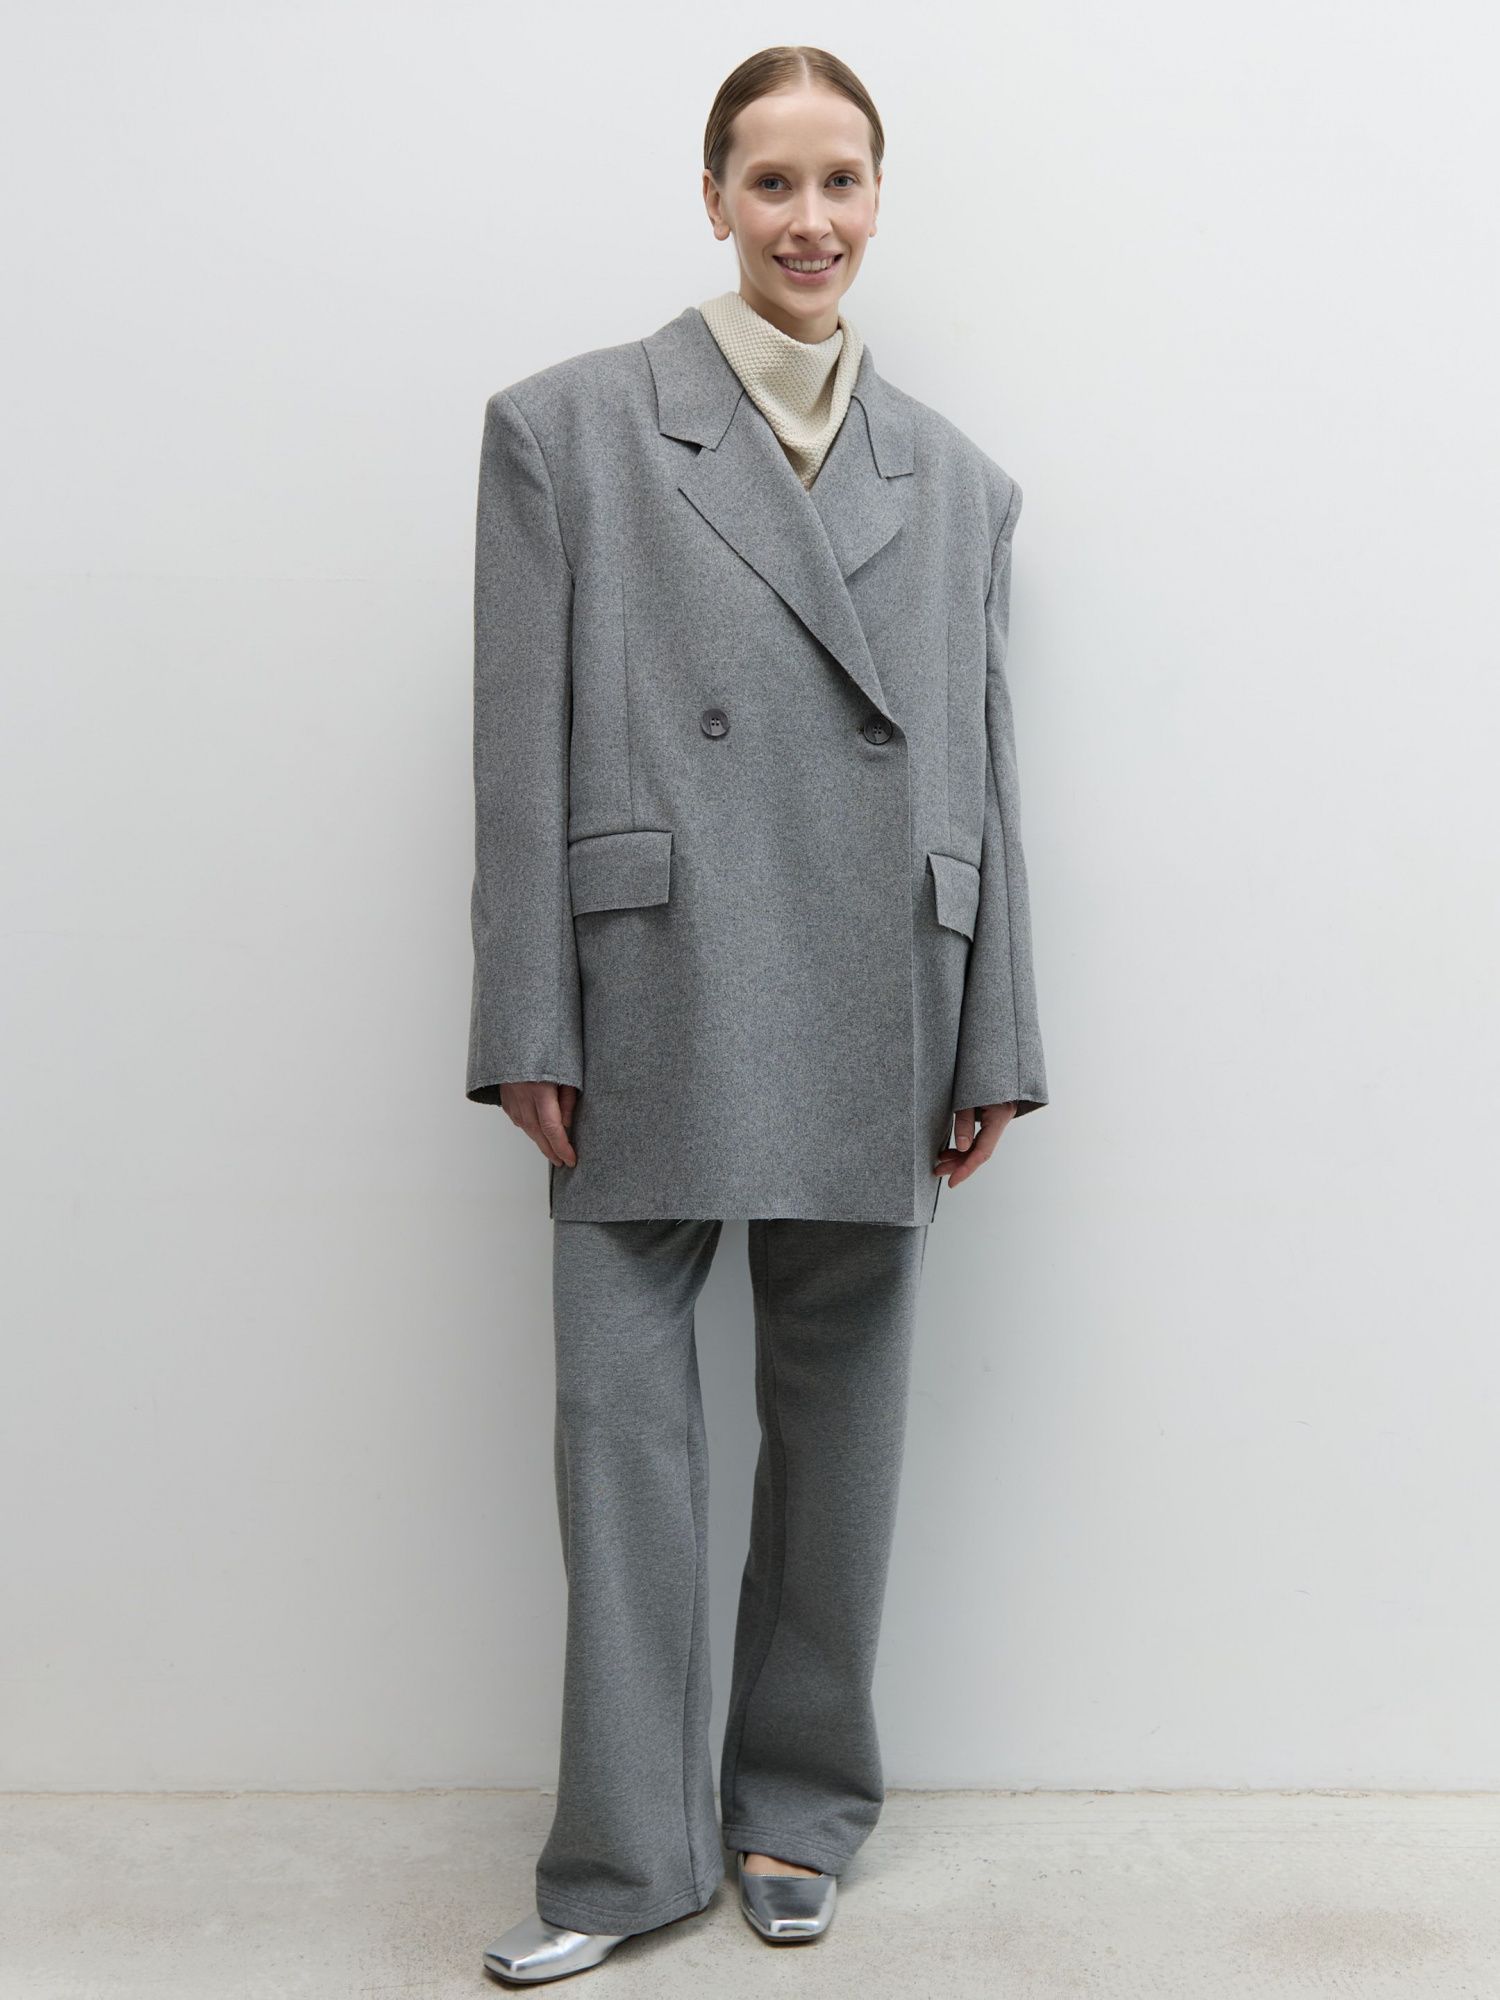 Жакет-пальто из итальянской шерсти серый - фото 1. Around